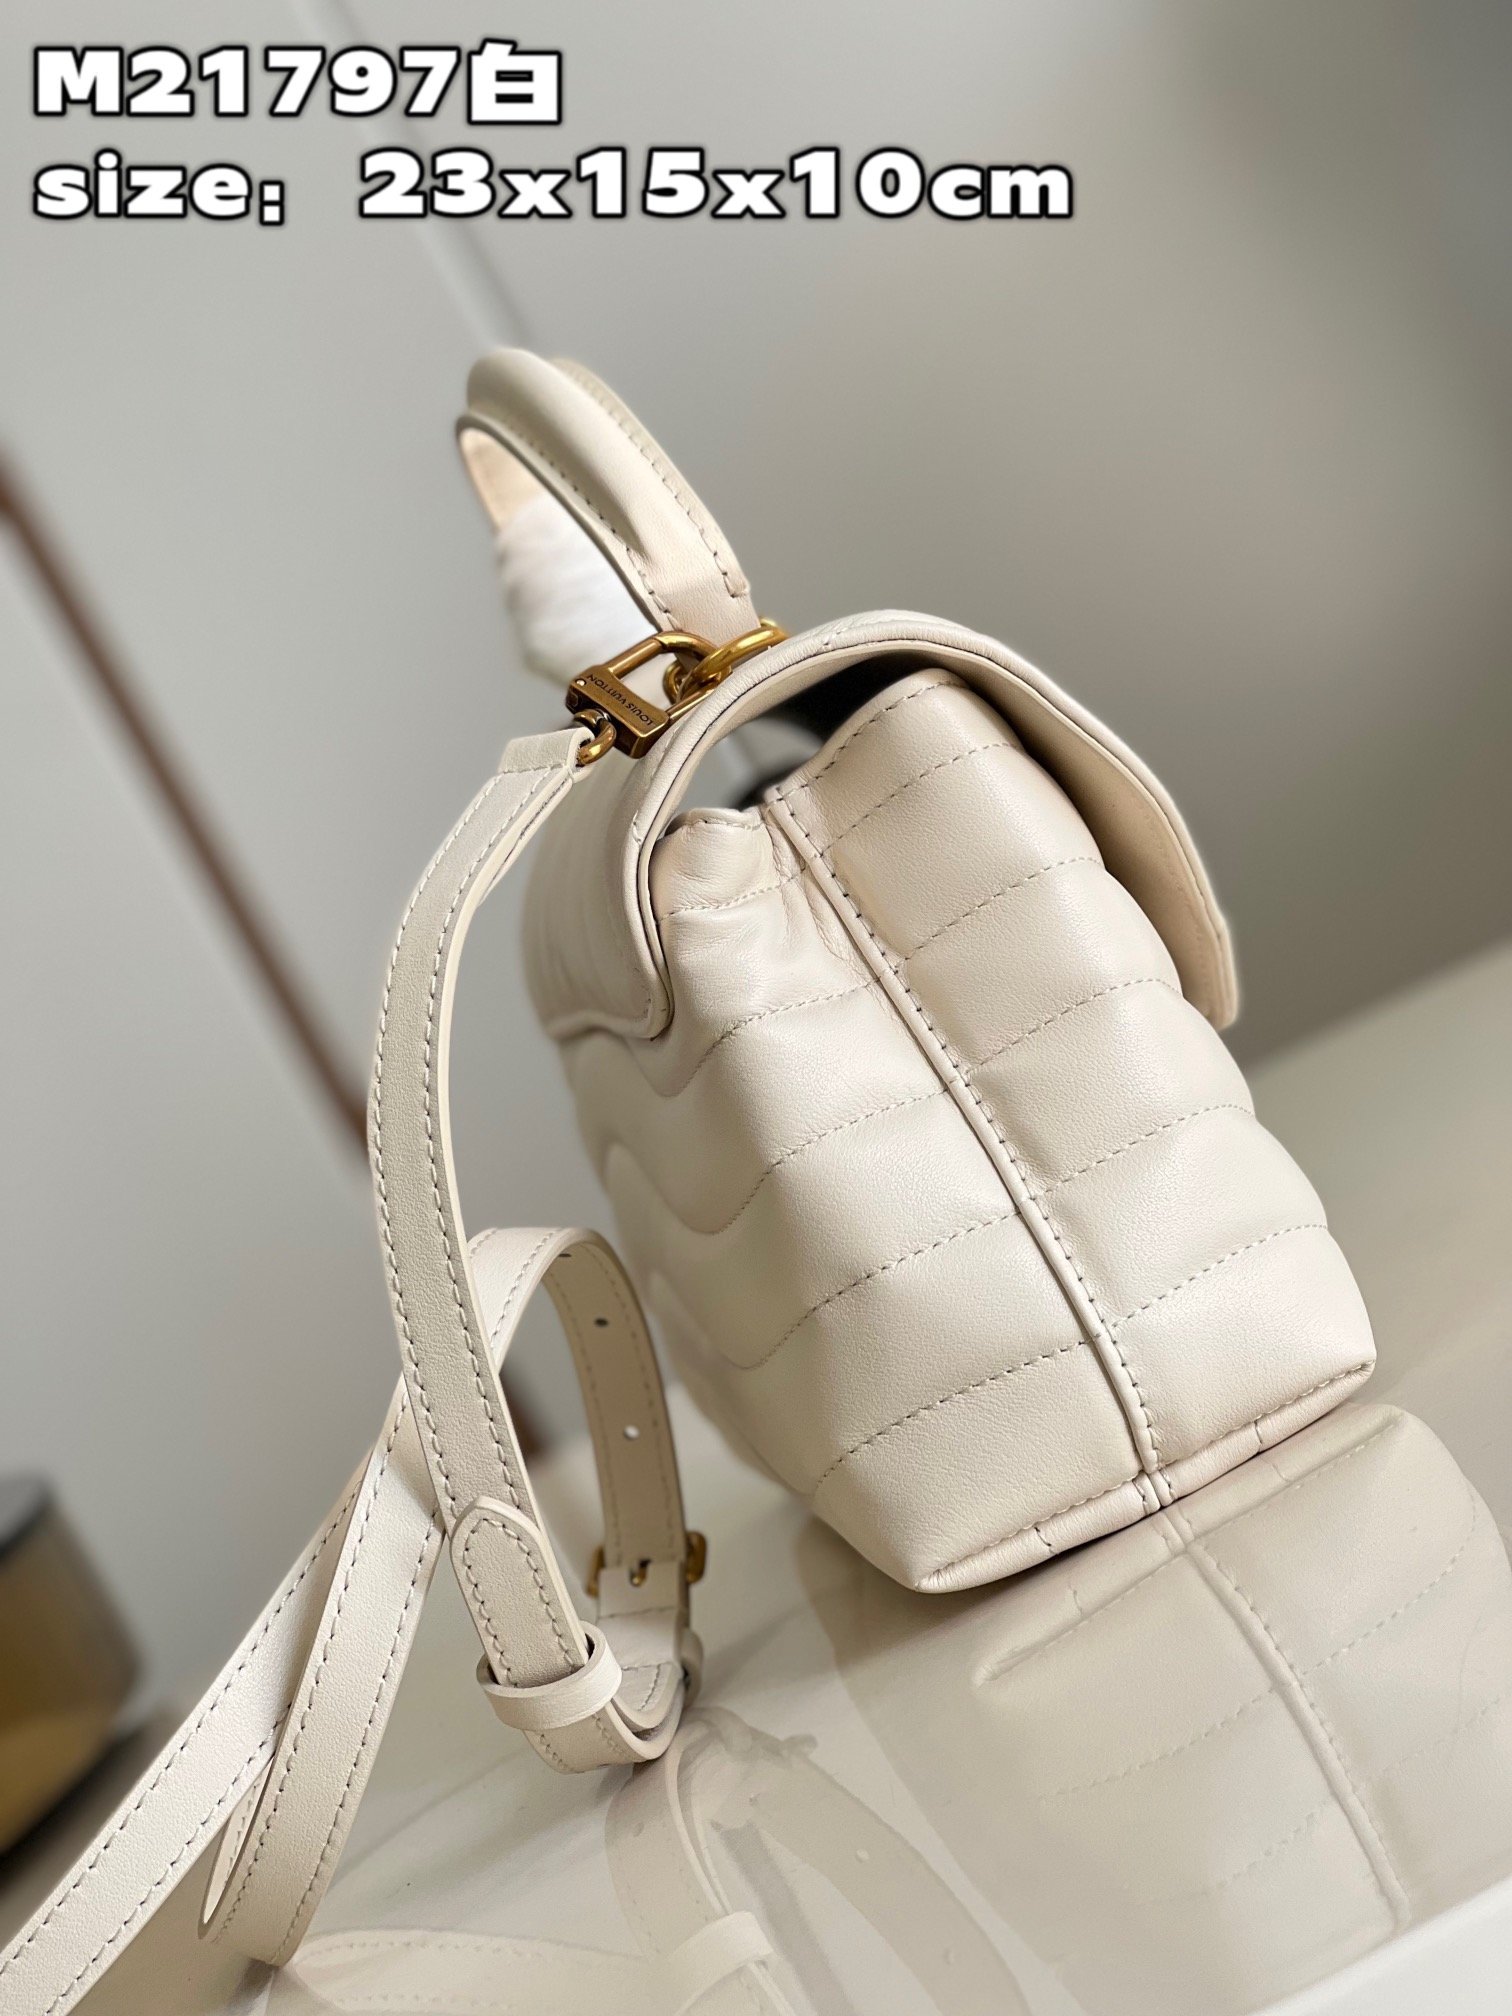 顶级原单M21797白此款HoldMe手袋是路易威登旗下标志性的NewWave绗缝皮具系列的新品造型精致